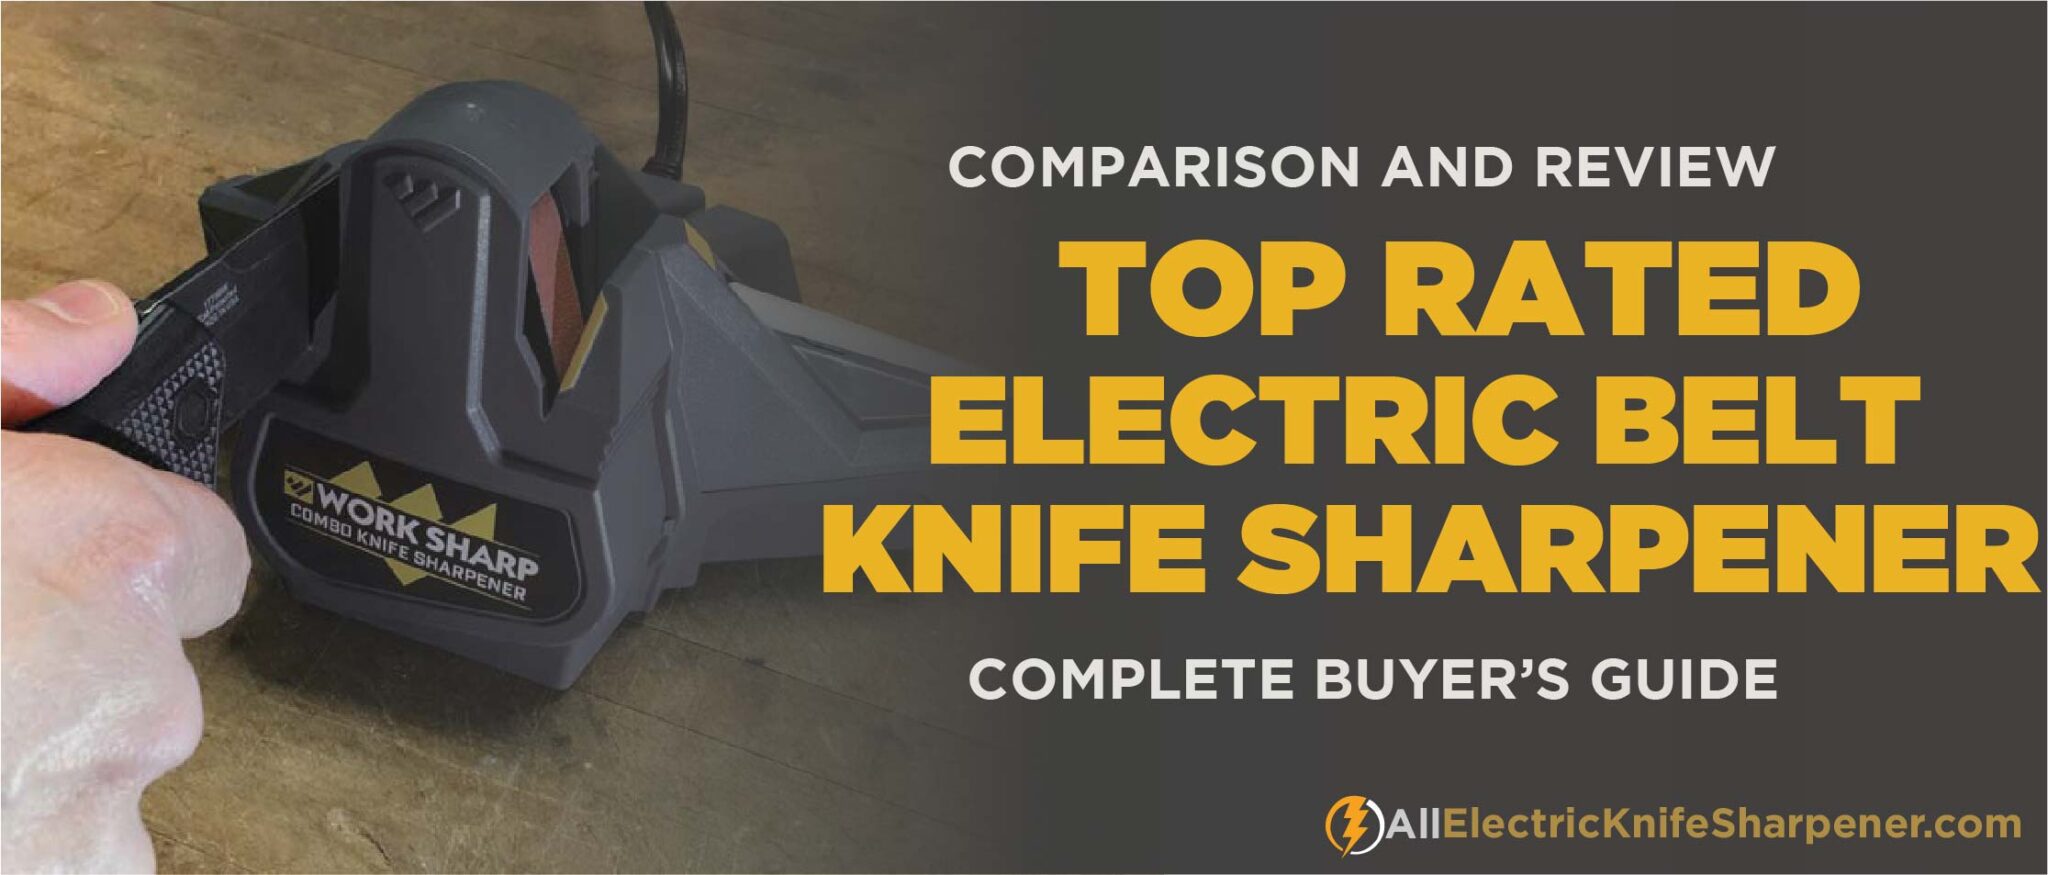 Best Electric Belt knife sharpener -A Complete User Guide & Reviews